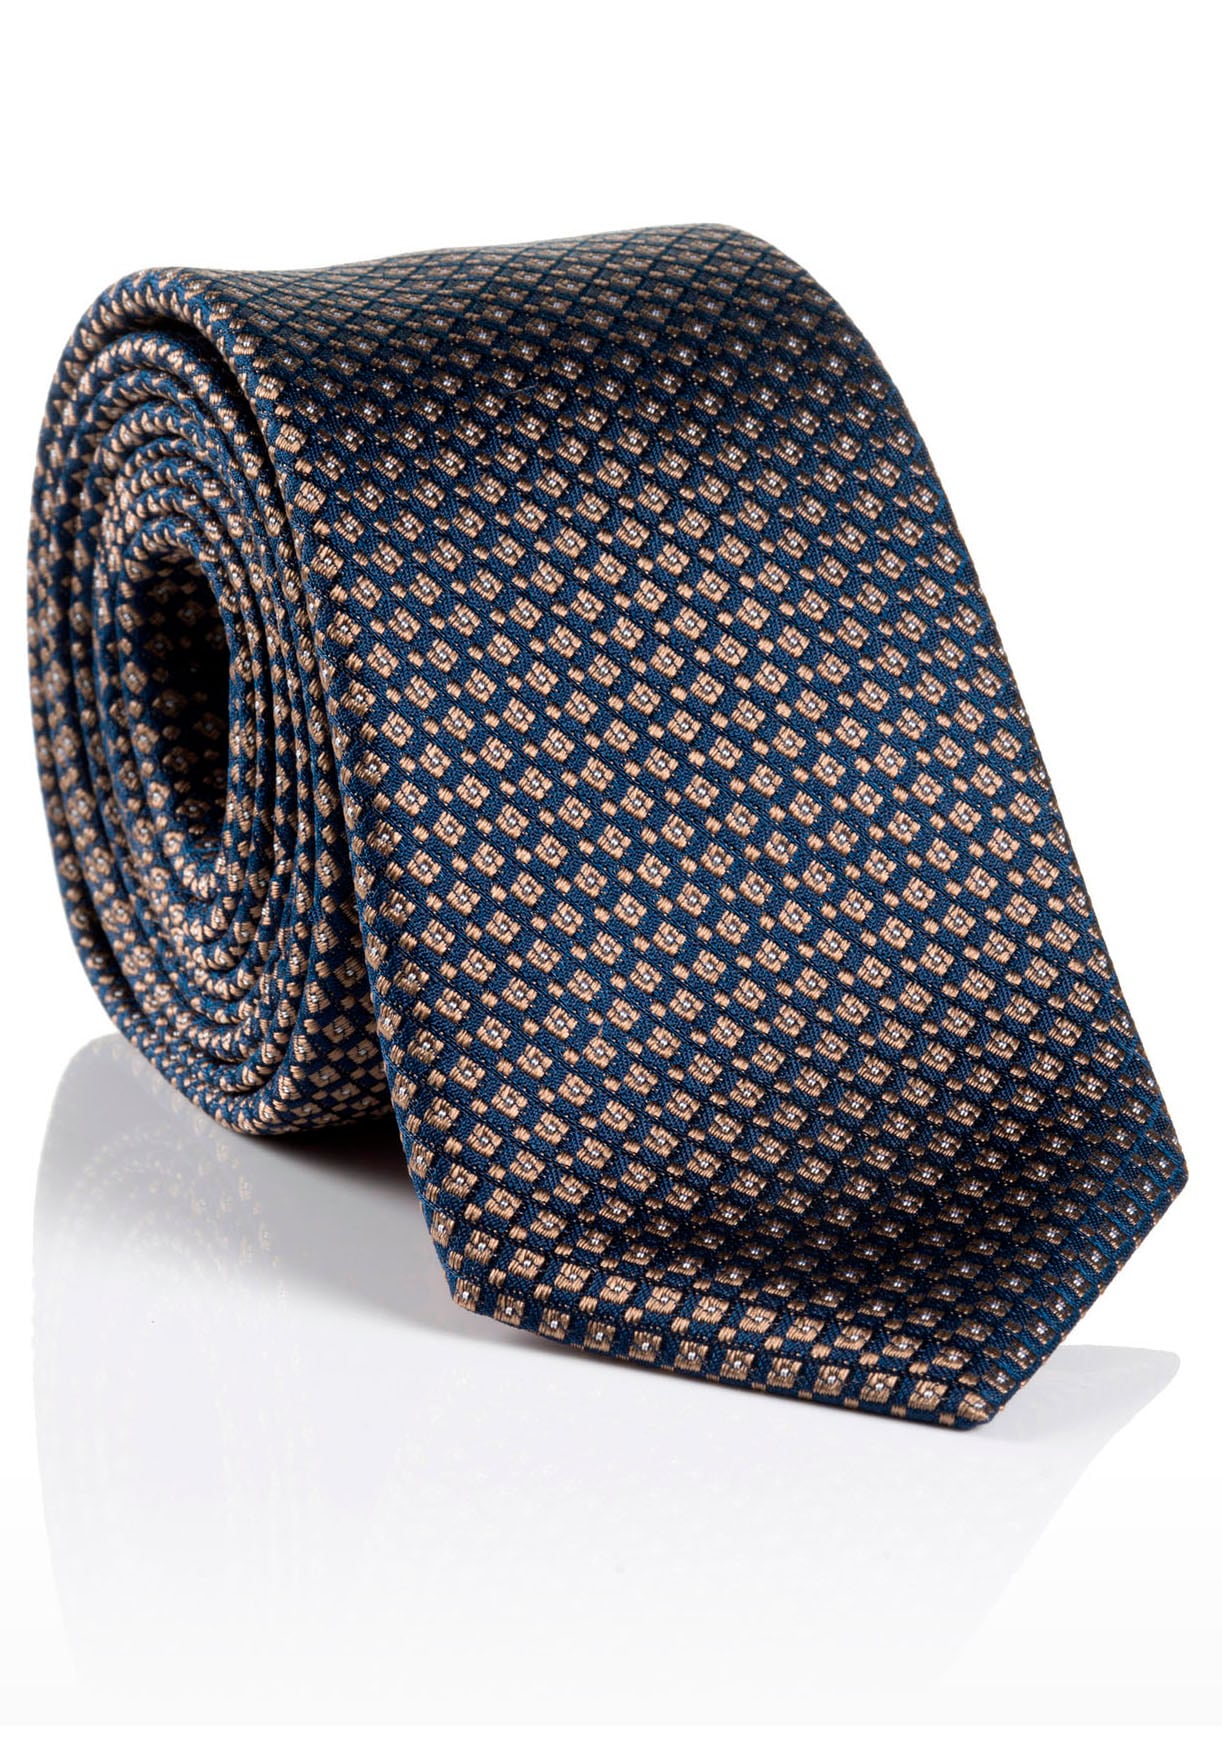 Krawatten online kaufen und Krawatte | Ackermann jetzt bei mehr